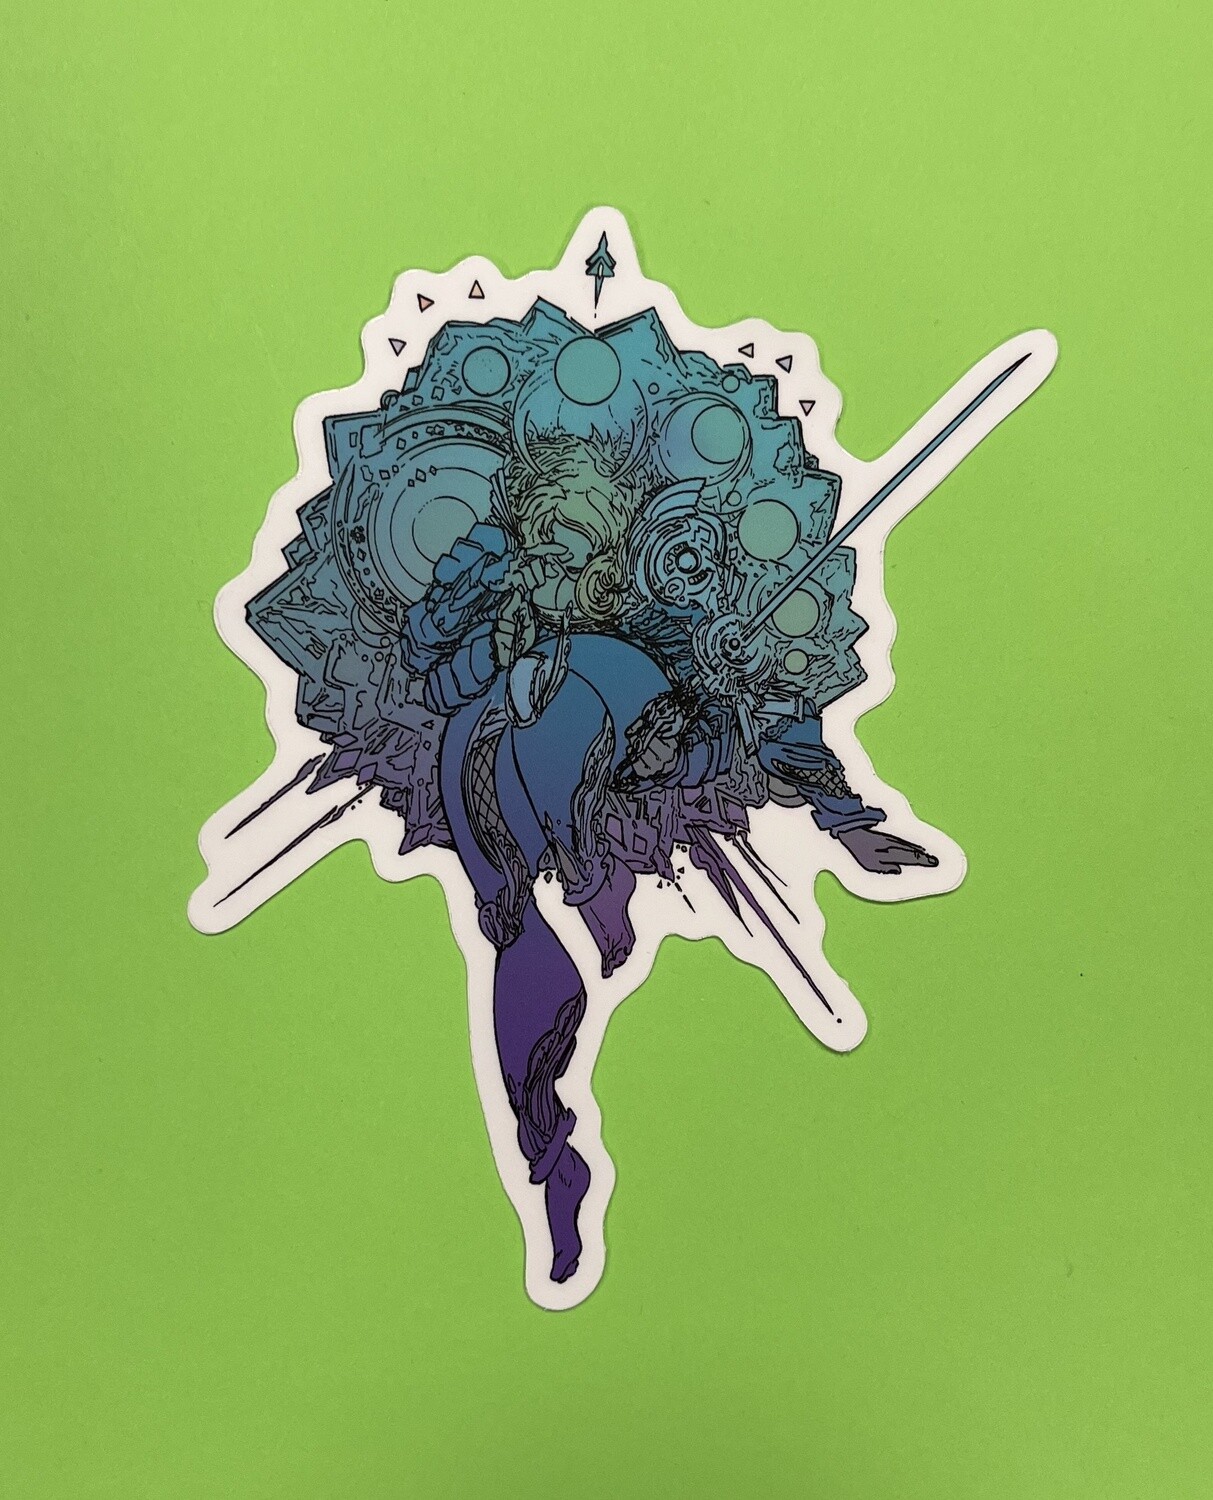 Space Diatom sticker, by Mike McGhee